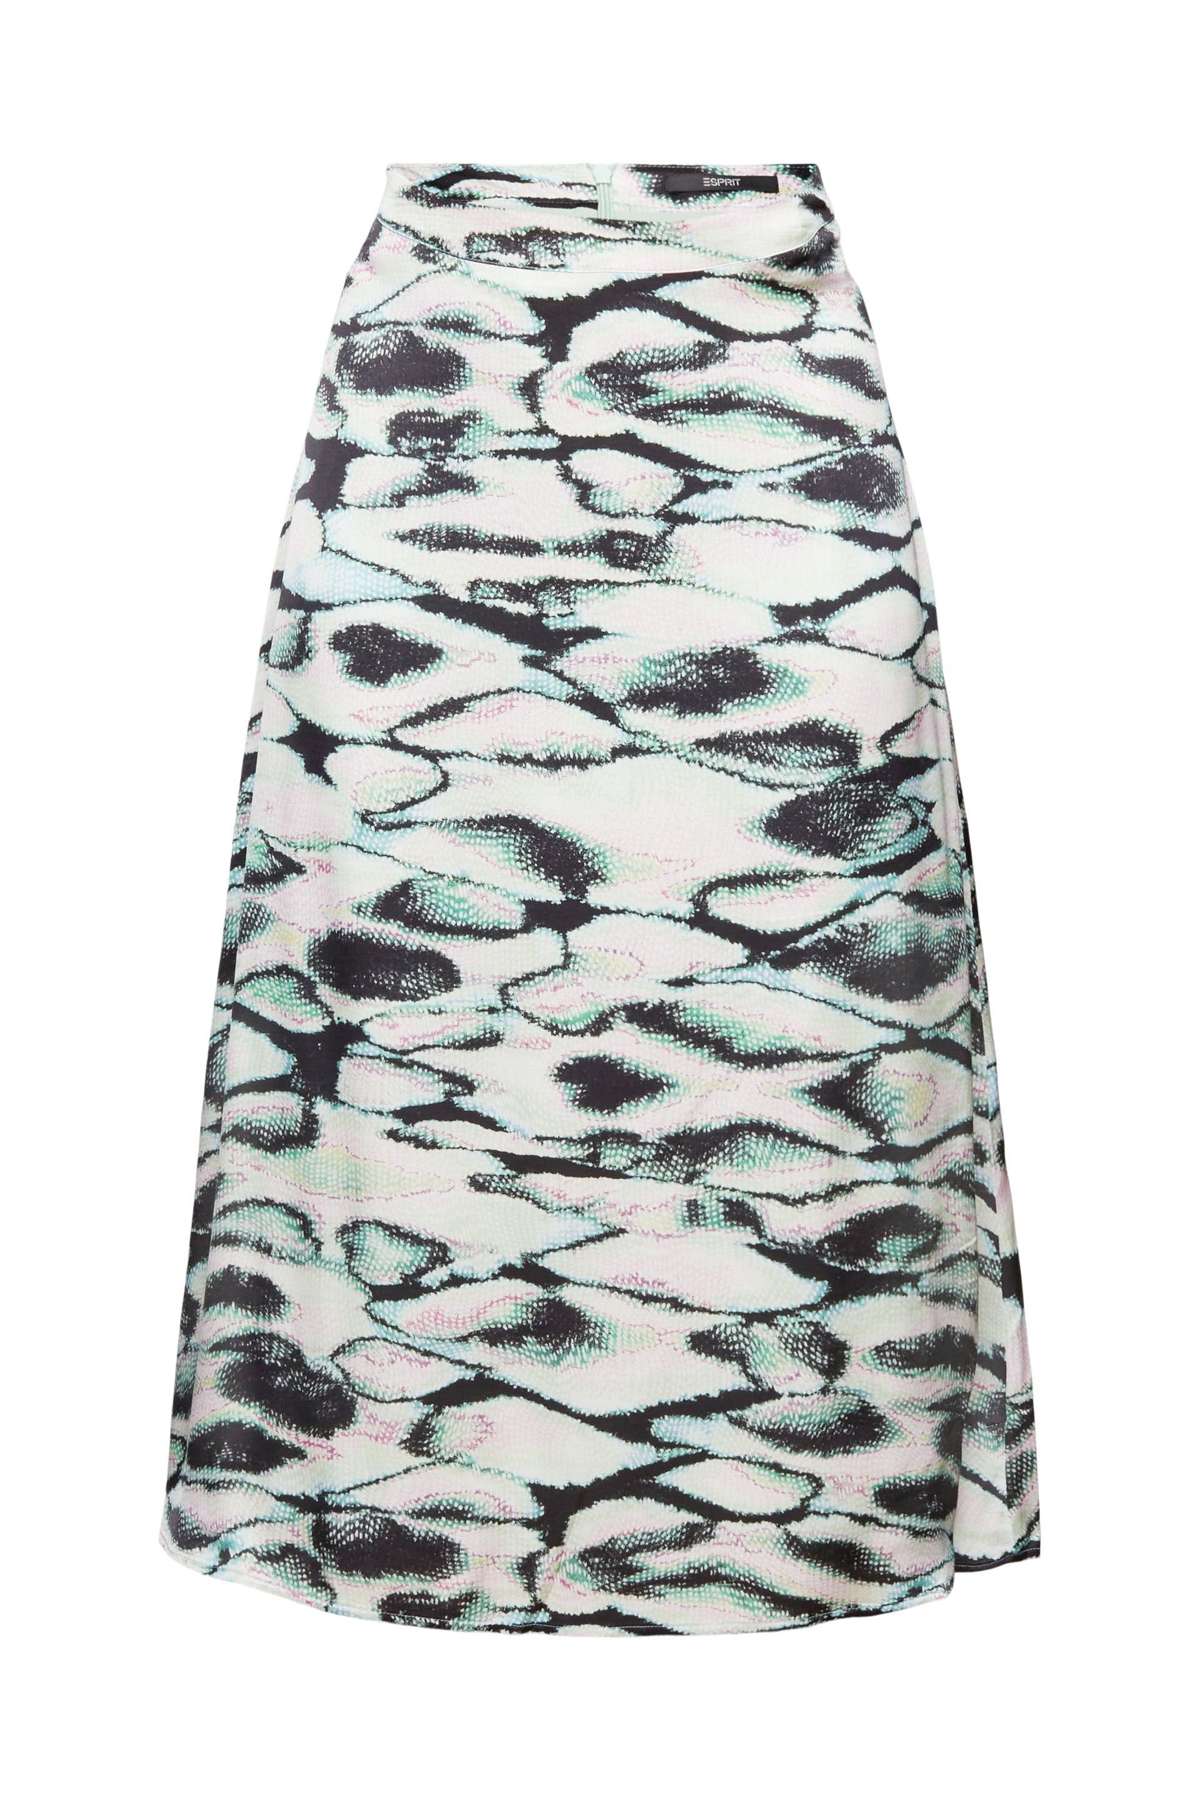 Юбка миди Collection, атласная юбка с принтом по всей поверхности